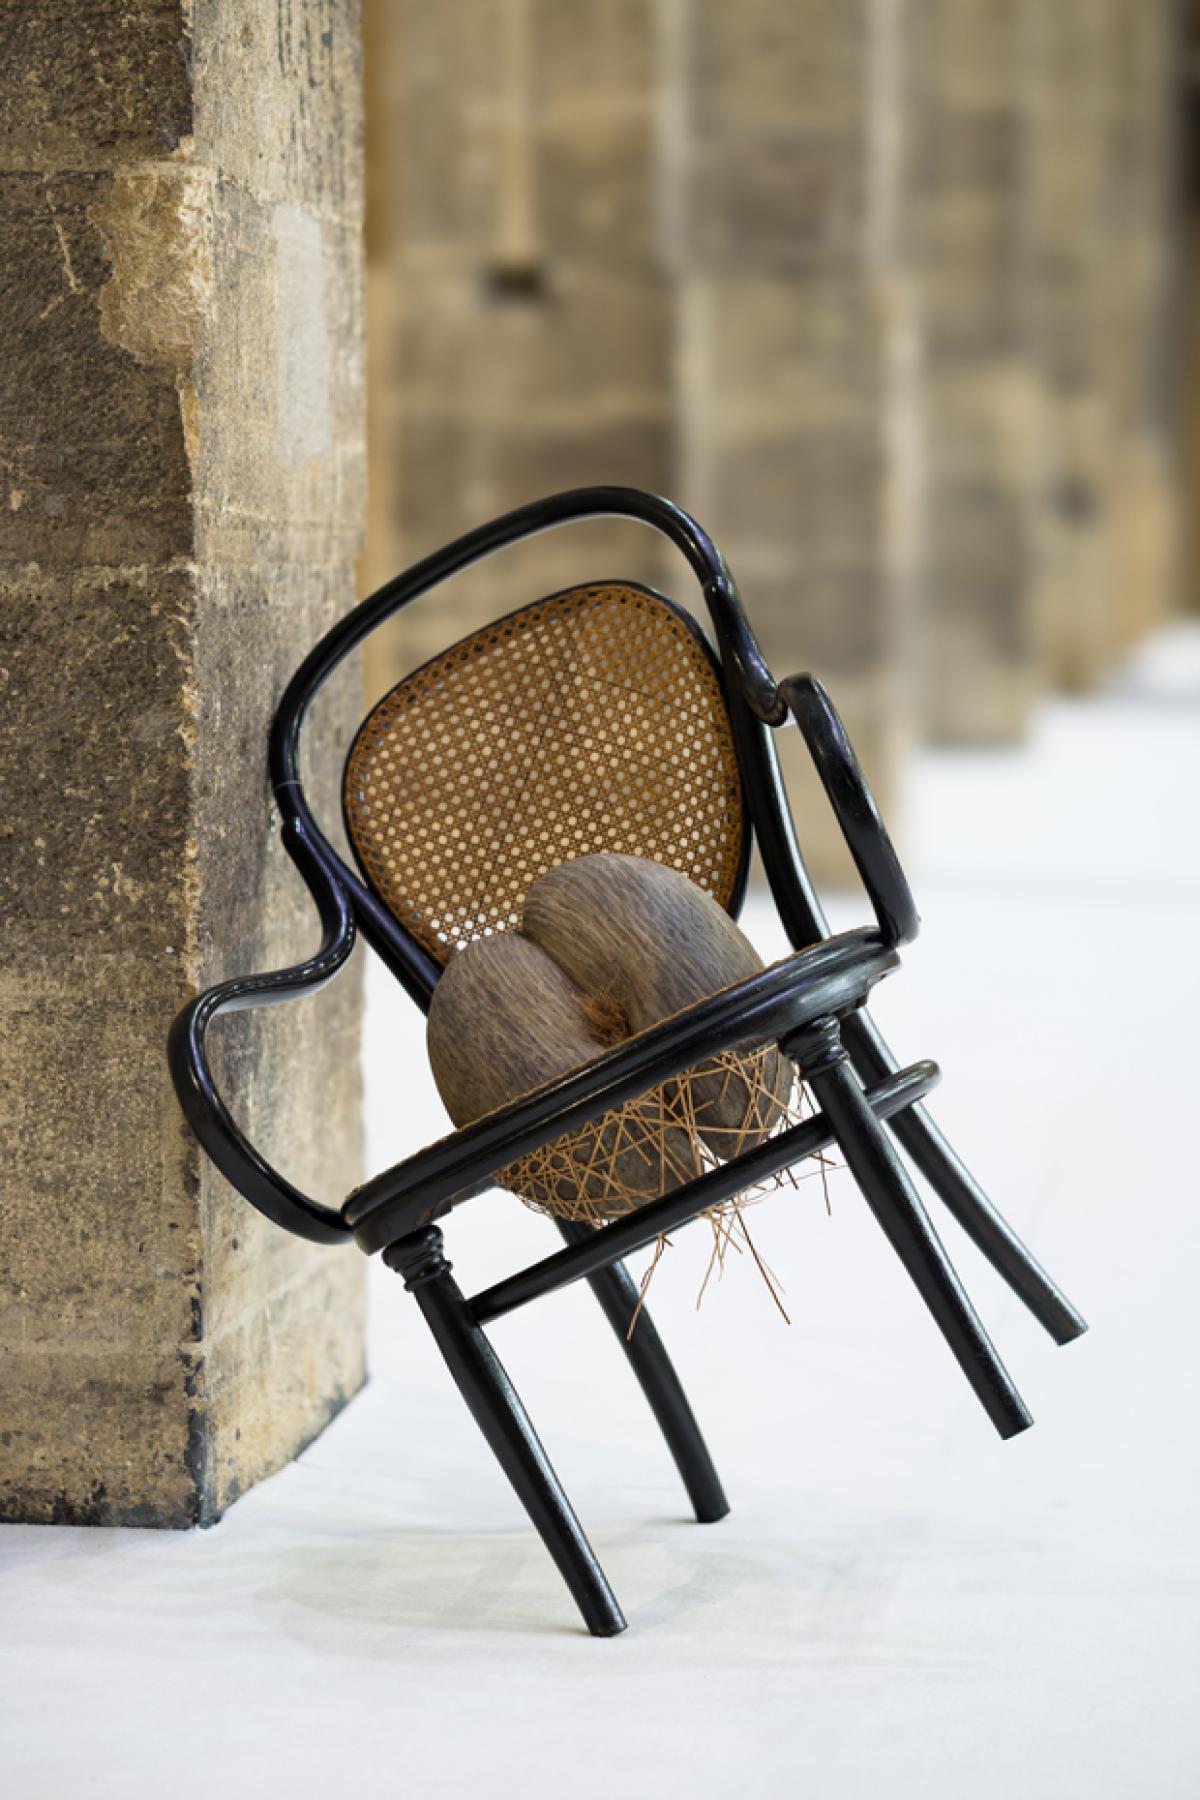 Un fauteuil est appuyé en équilibre contre un mur en pierre. L'assise en cannage est transpercée et retient une graine "Coco fesse"